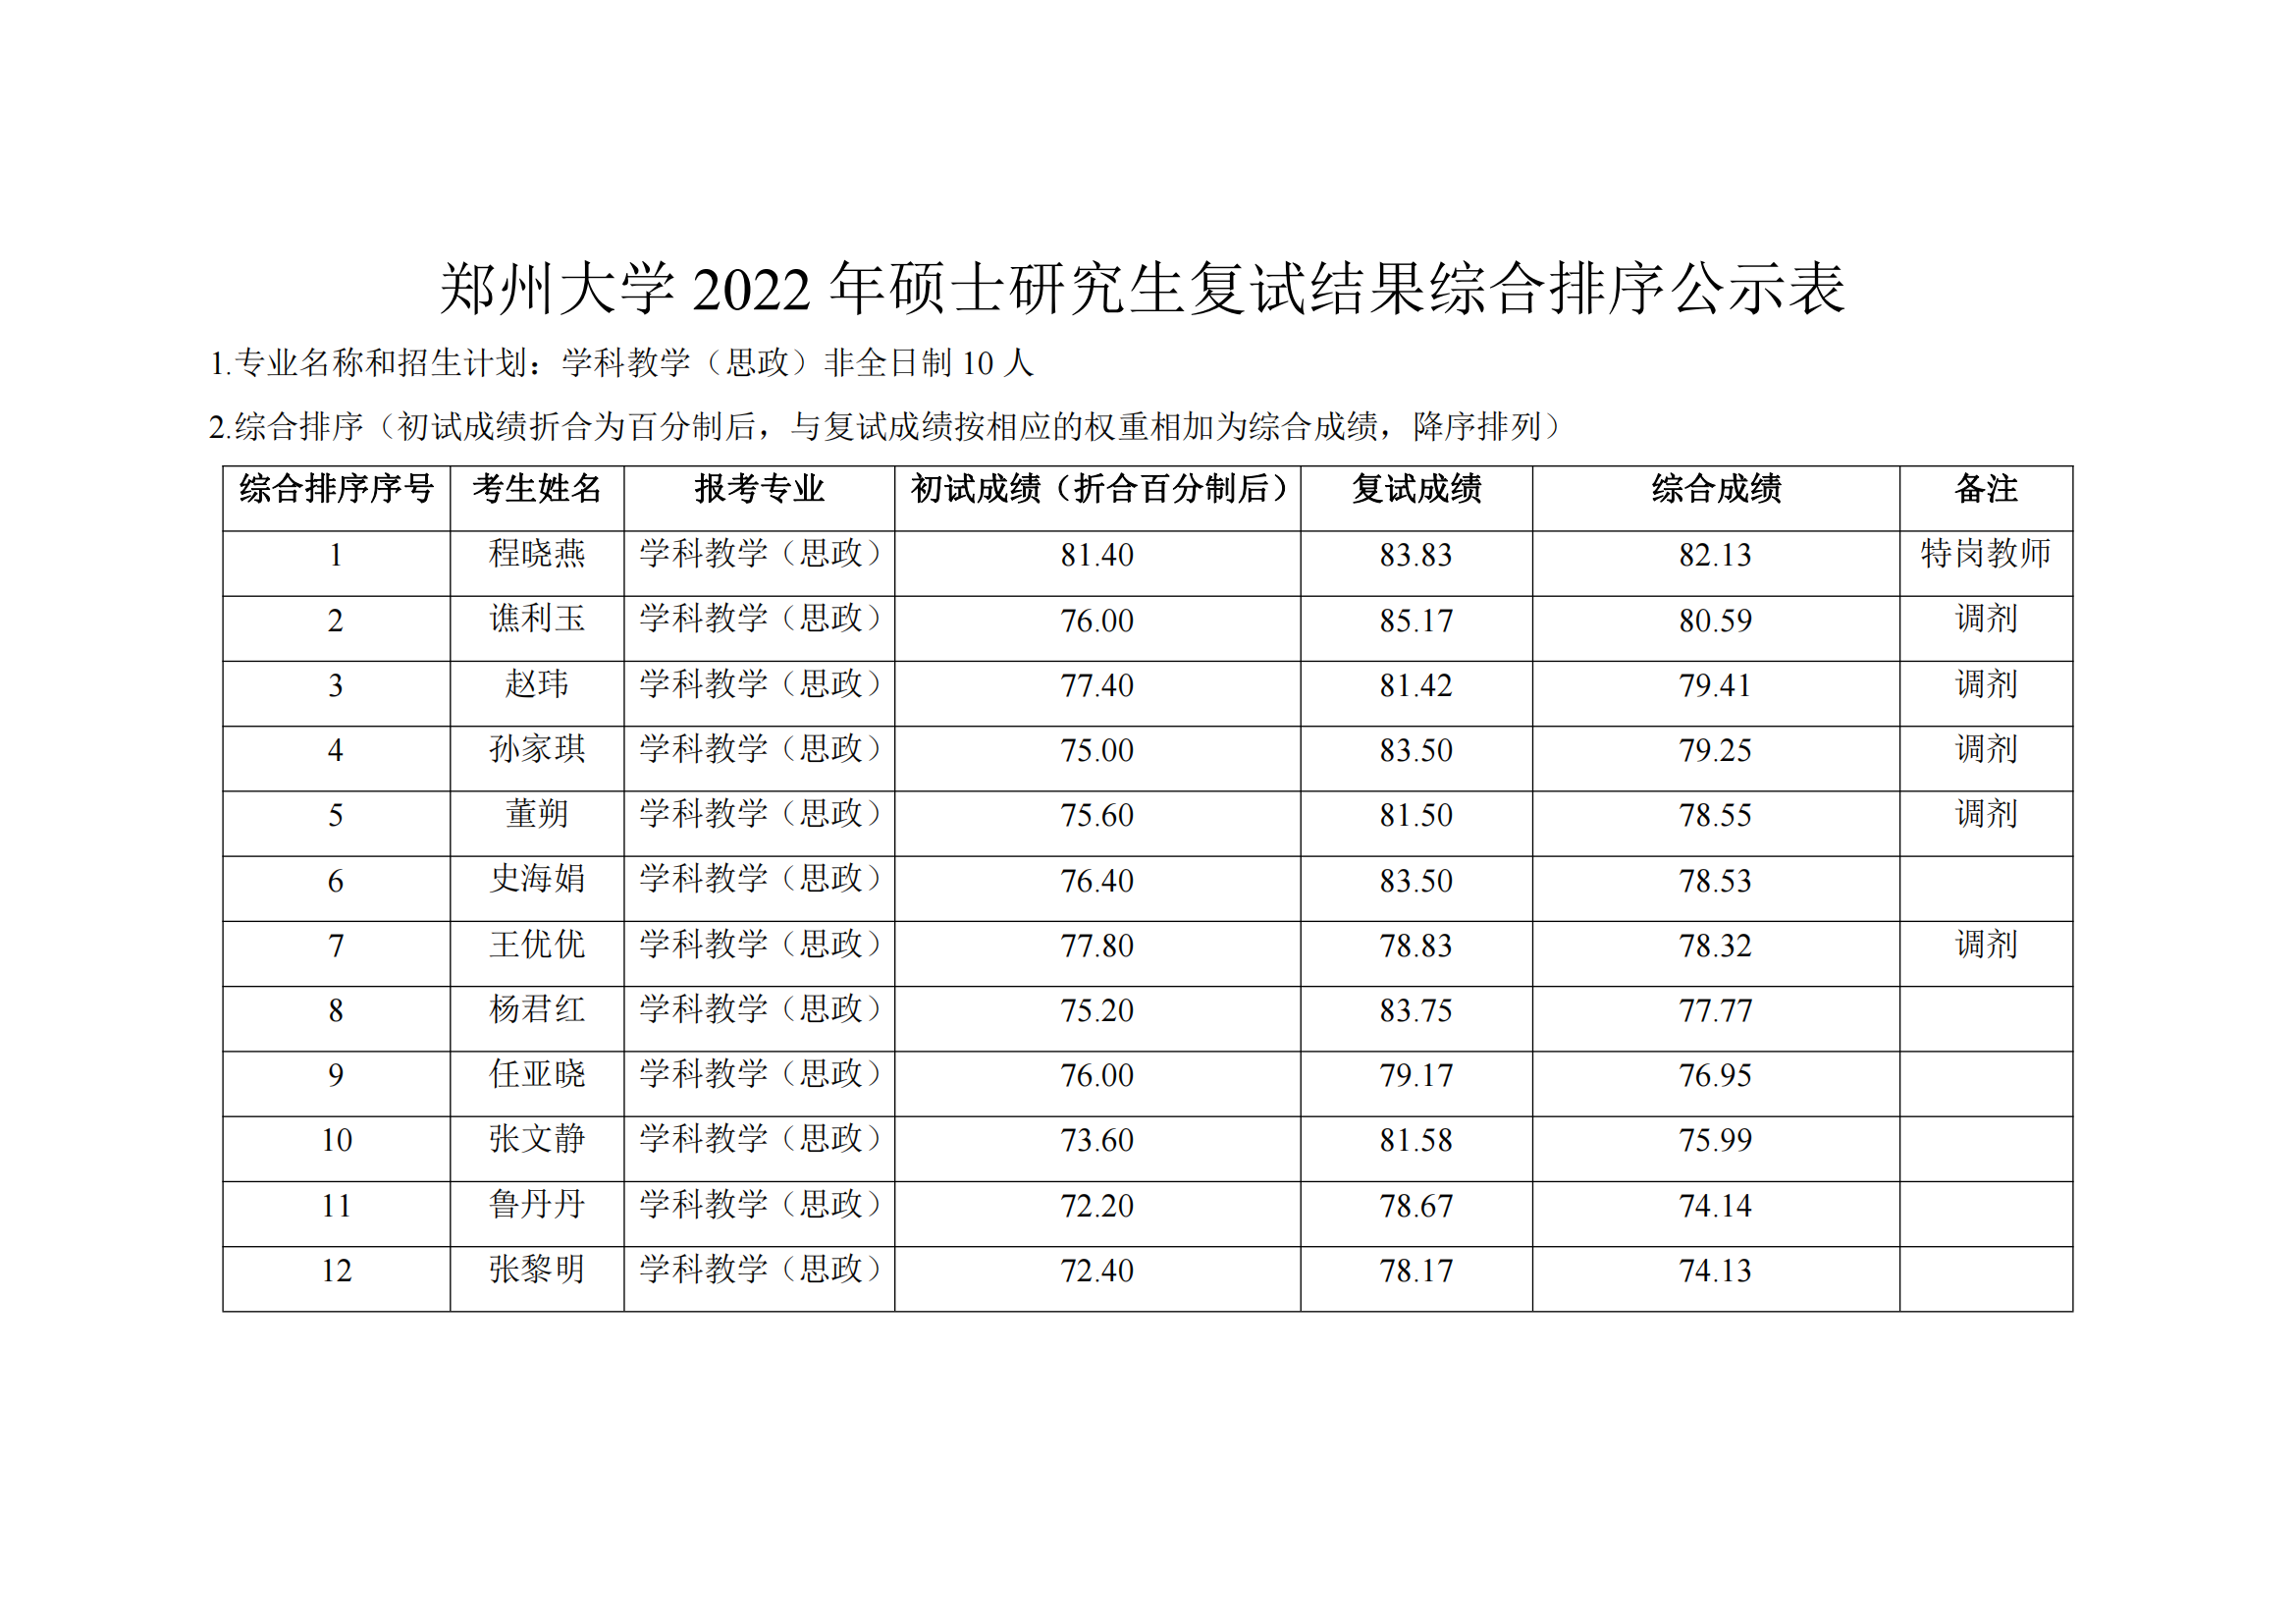 郑州大学教育学院2022年硕士研究生复试结果综合排序公示表_17.png